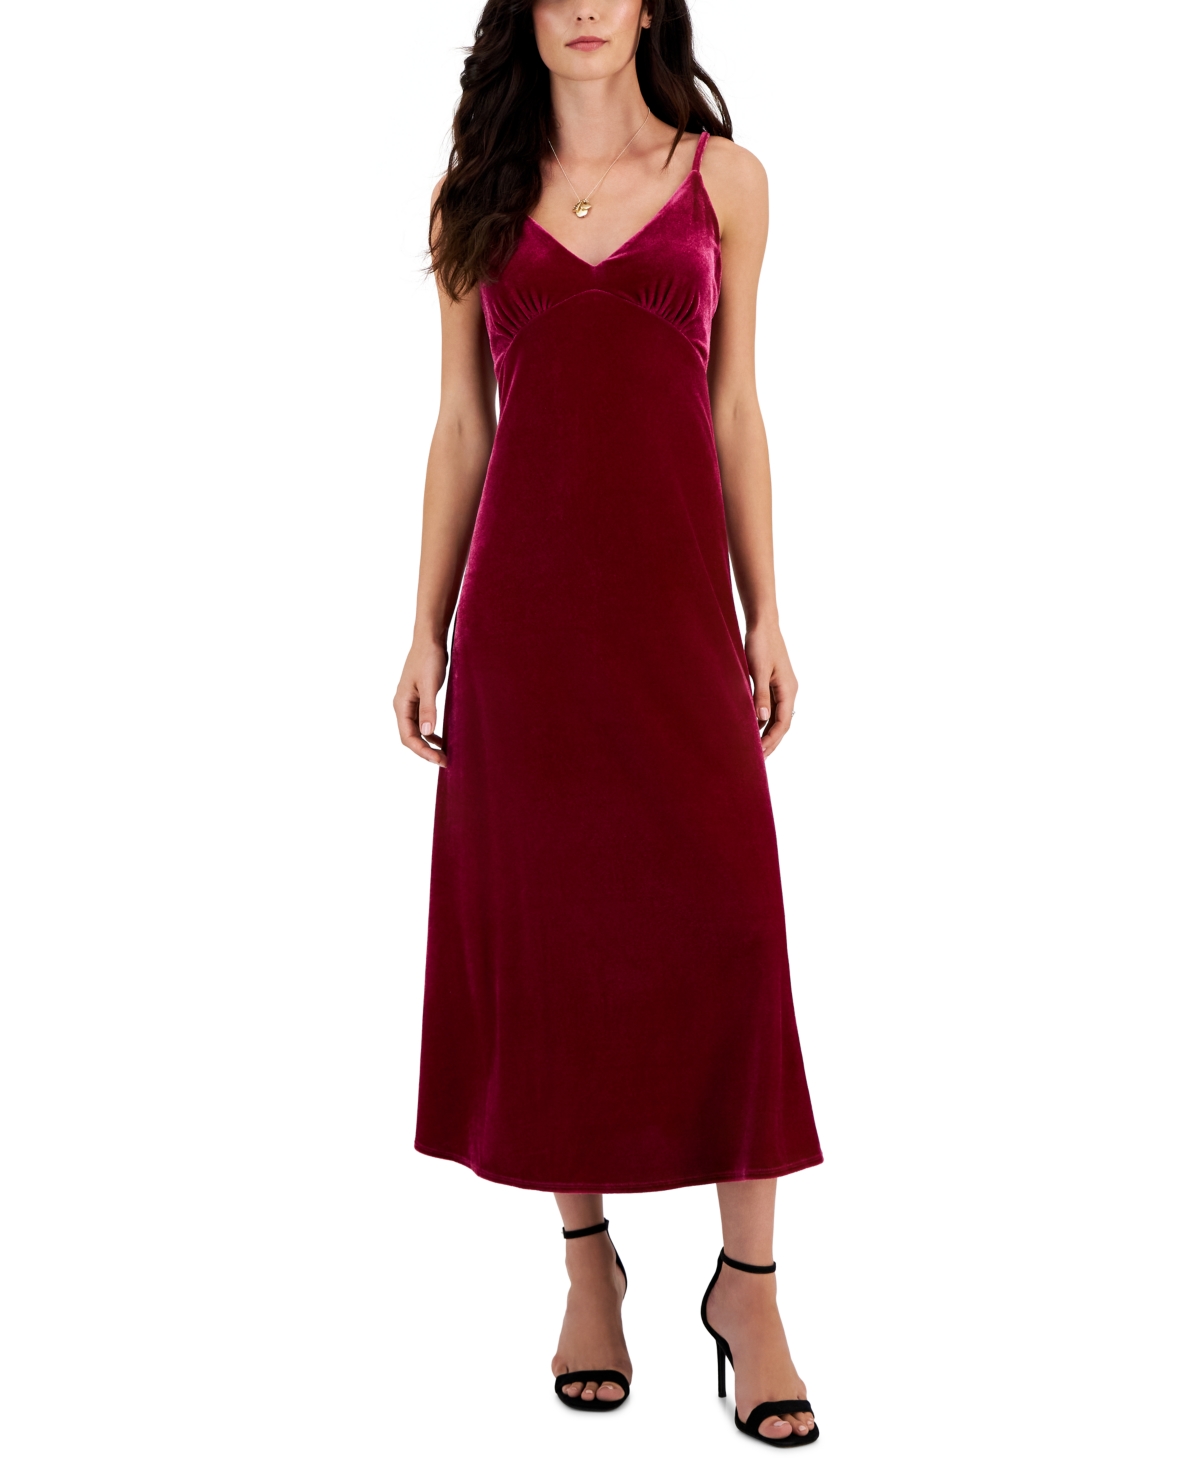 Women's V-Neck Sleeveless Velvet Slip Dress - Thistle Pink